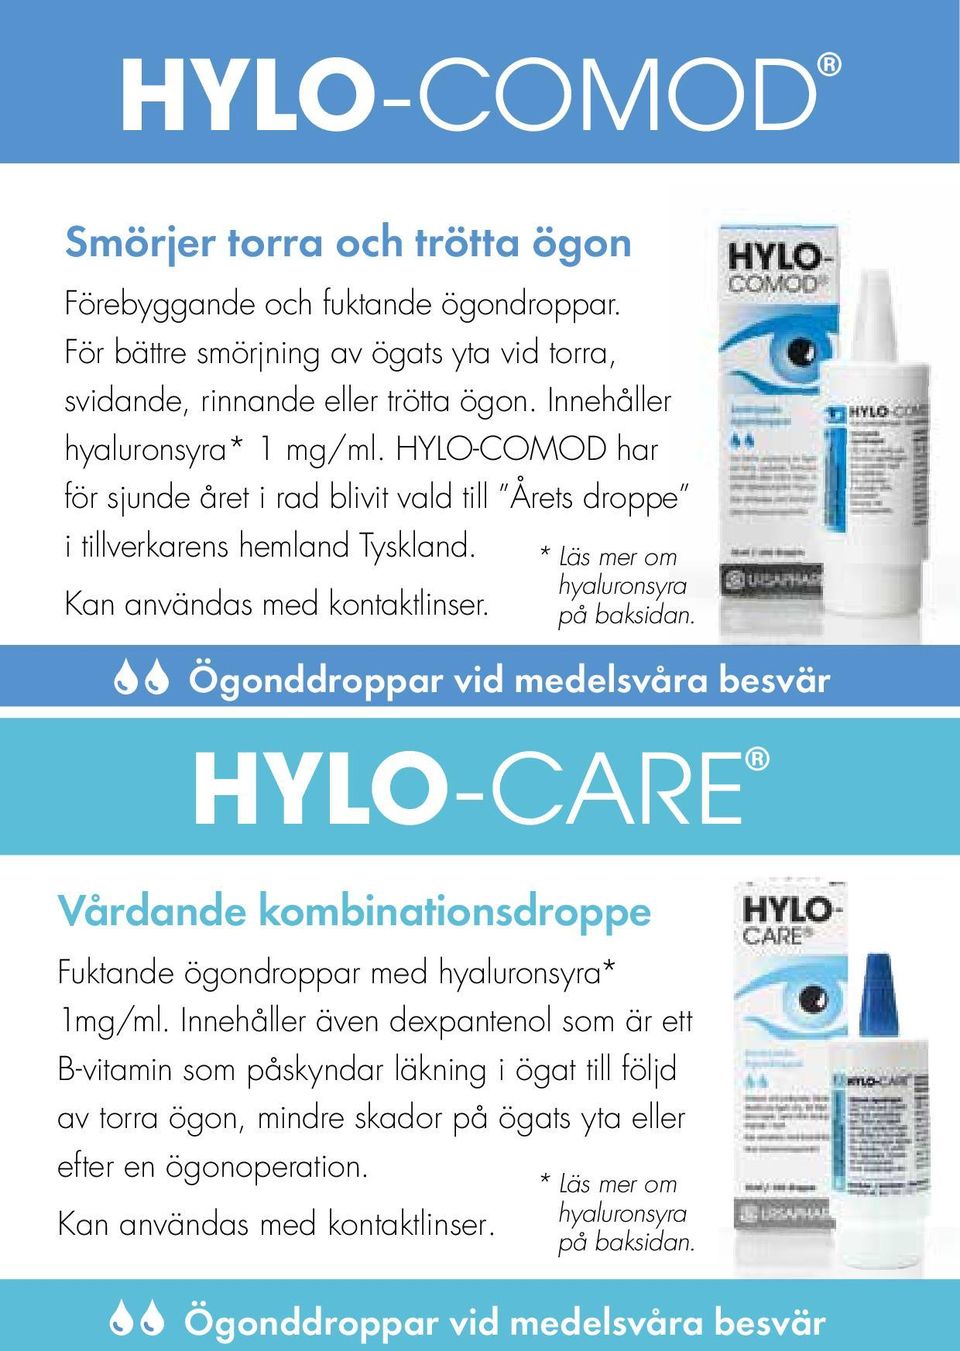 * Läs mer om hyaluronsyra Kan användas med kontaktlinser. på baksidan.